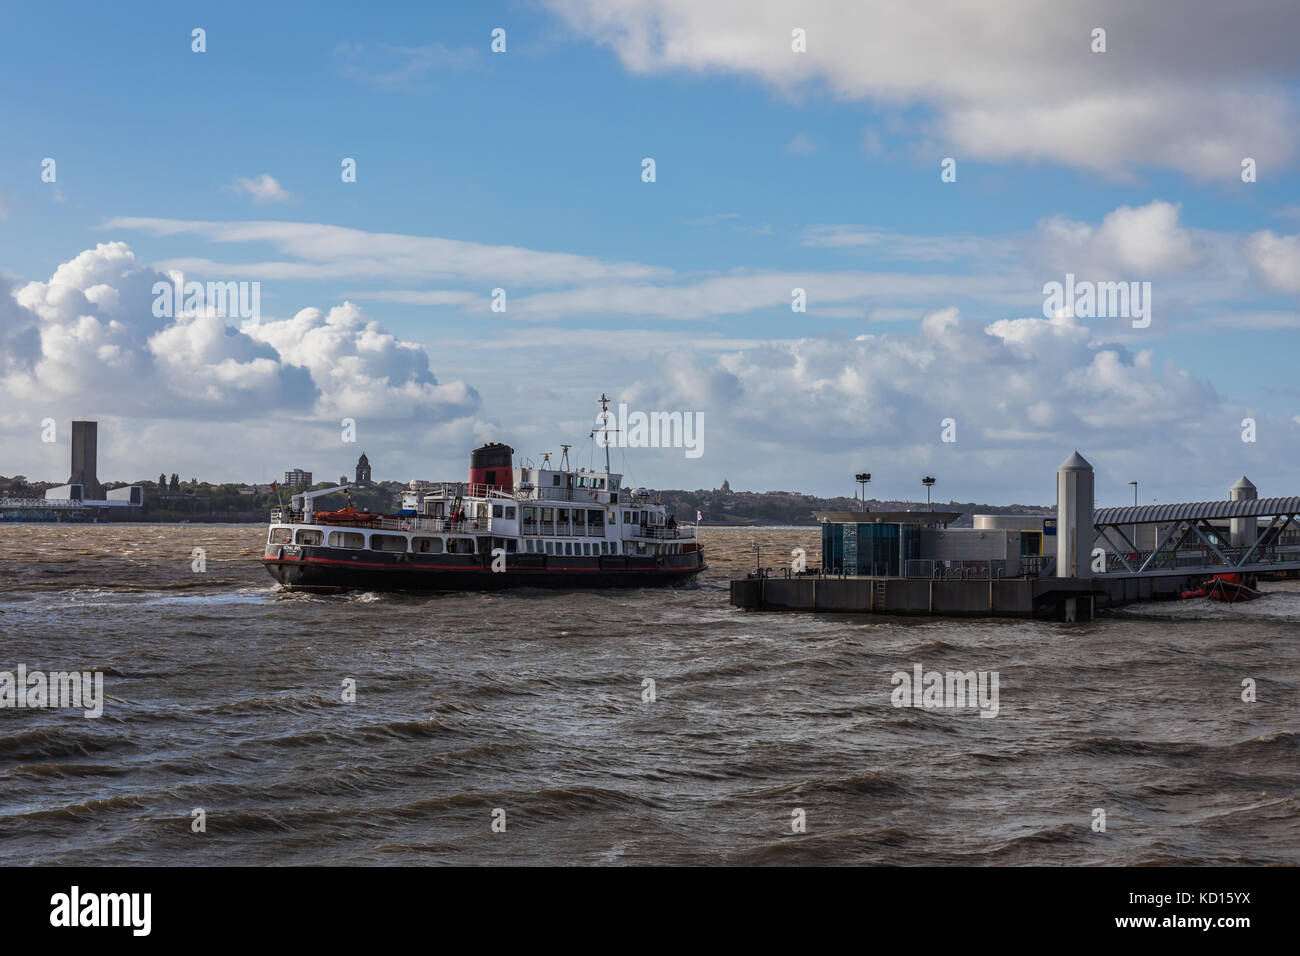 Il royal iris traghetto sul fiume Mersey, visto da Pier Head, Liverpool, Regno Unito. Foto Stock